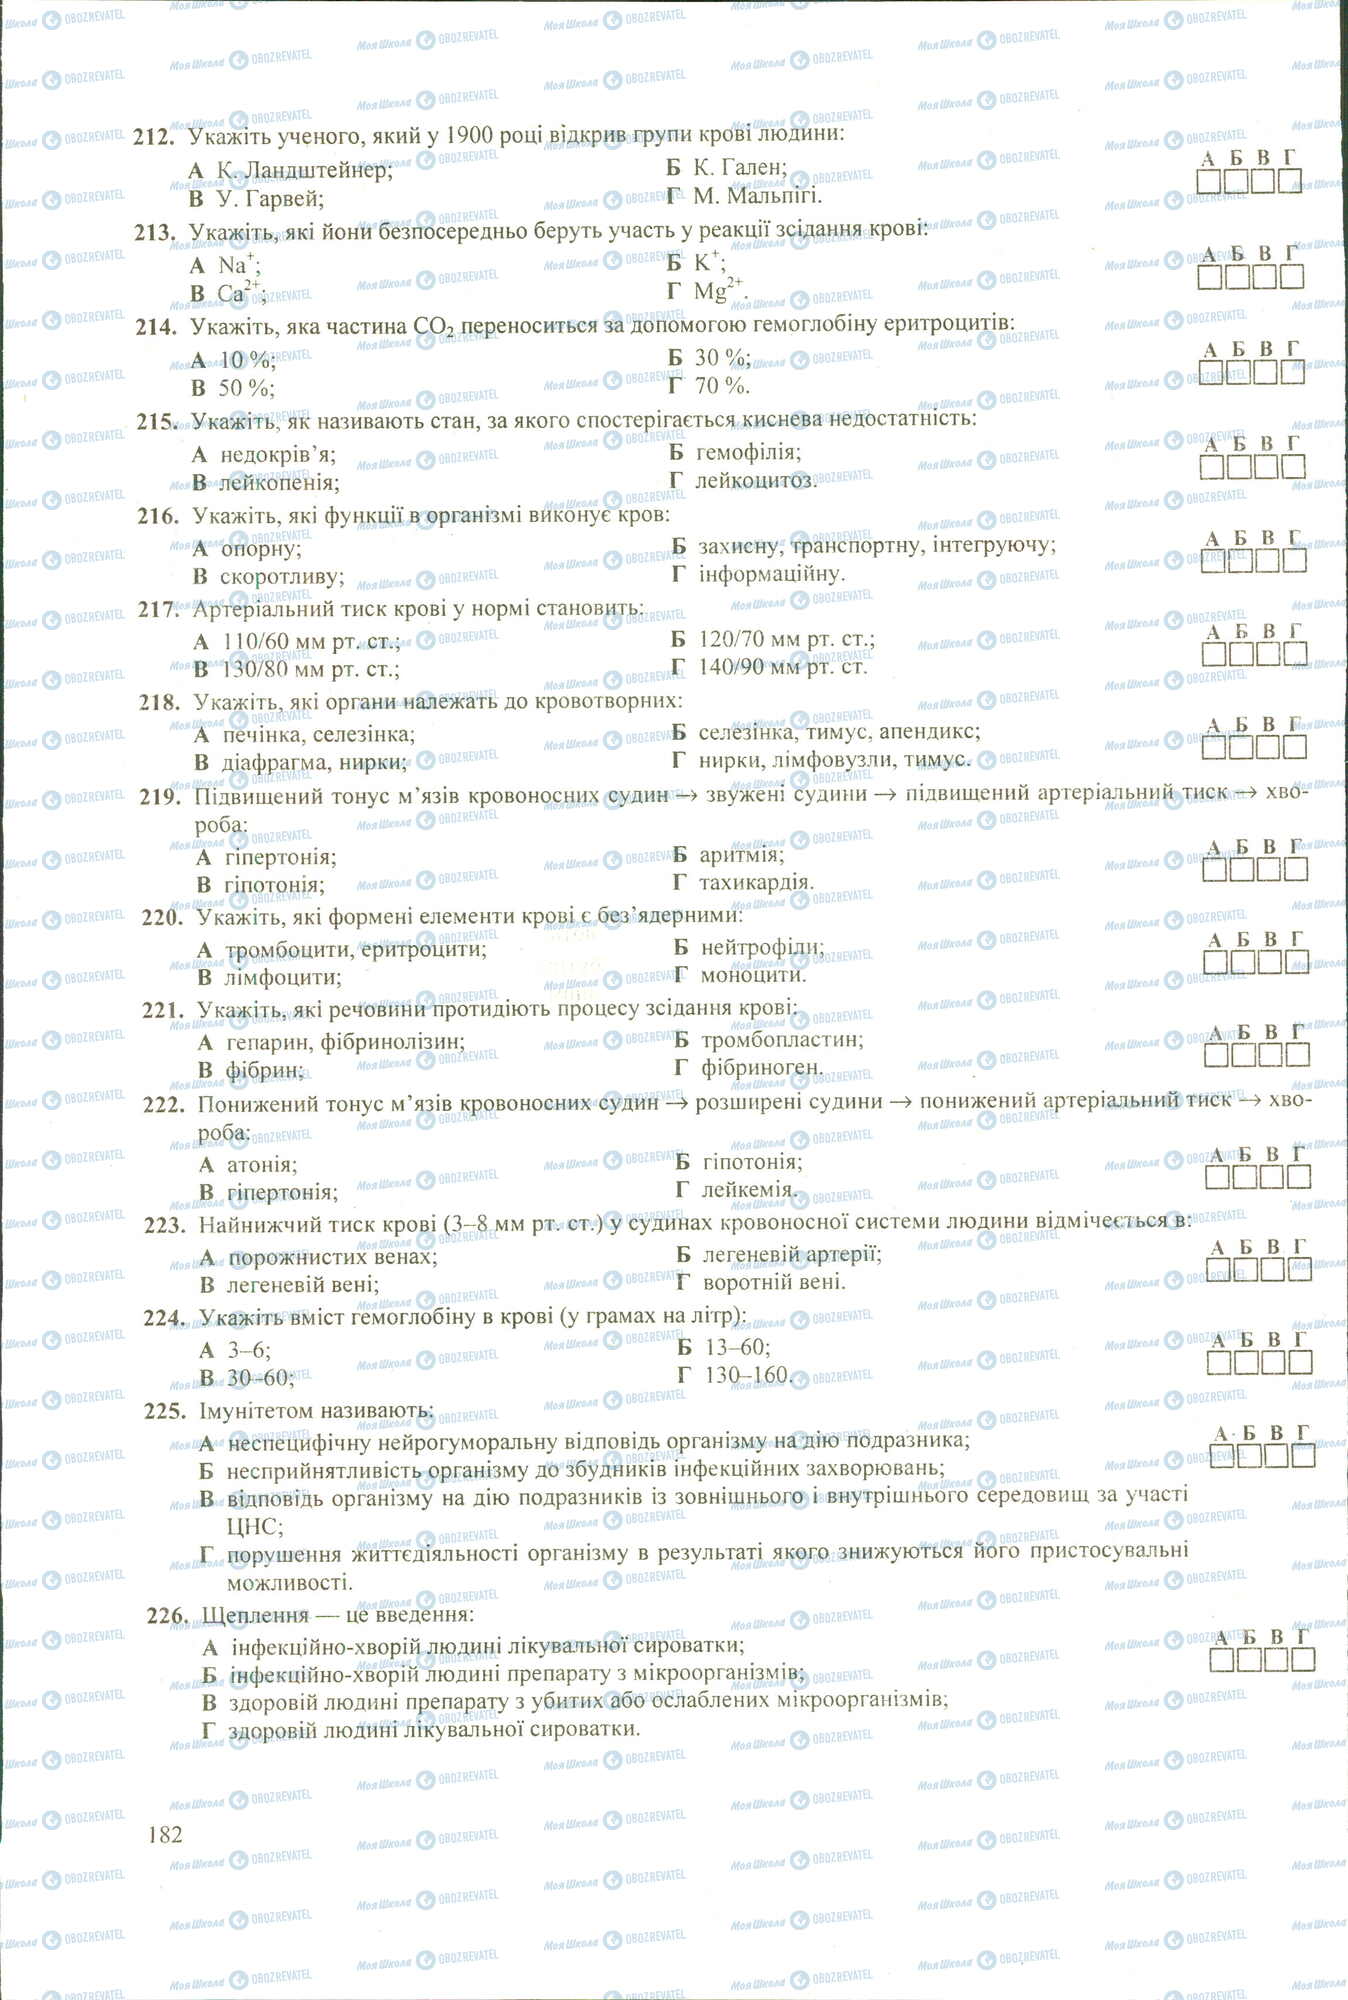 ЗНО Биология 11 класс страница 212-226